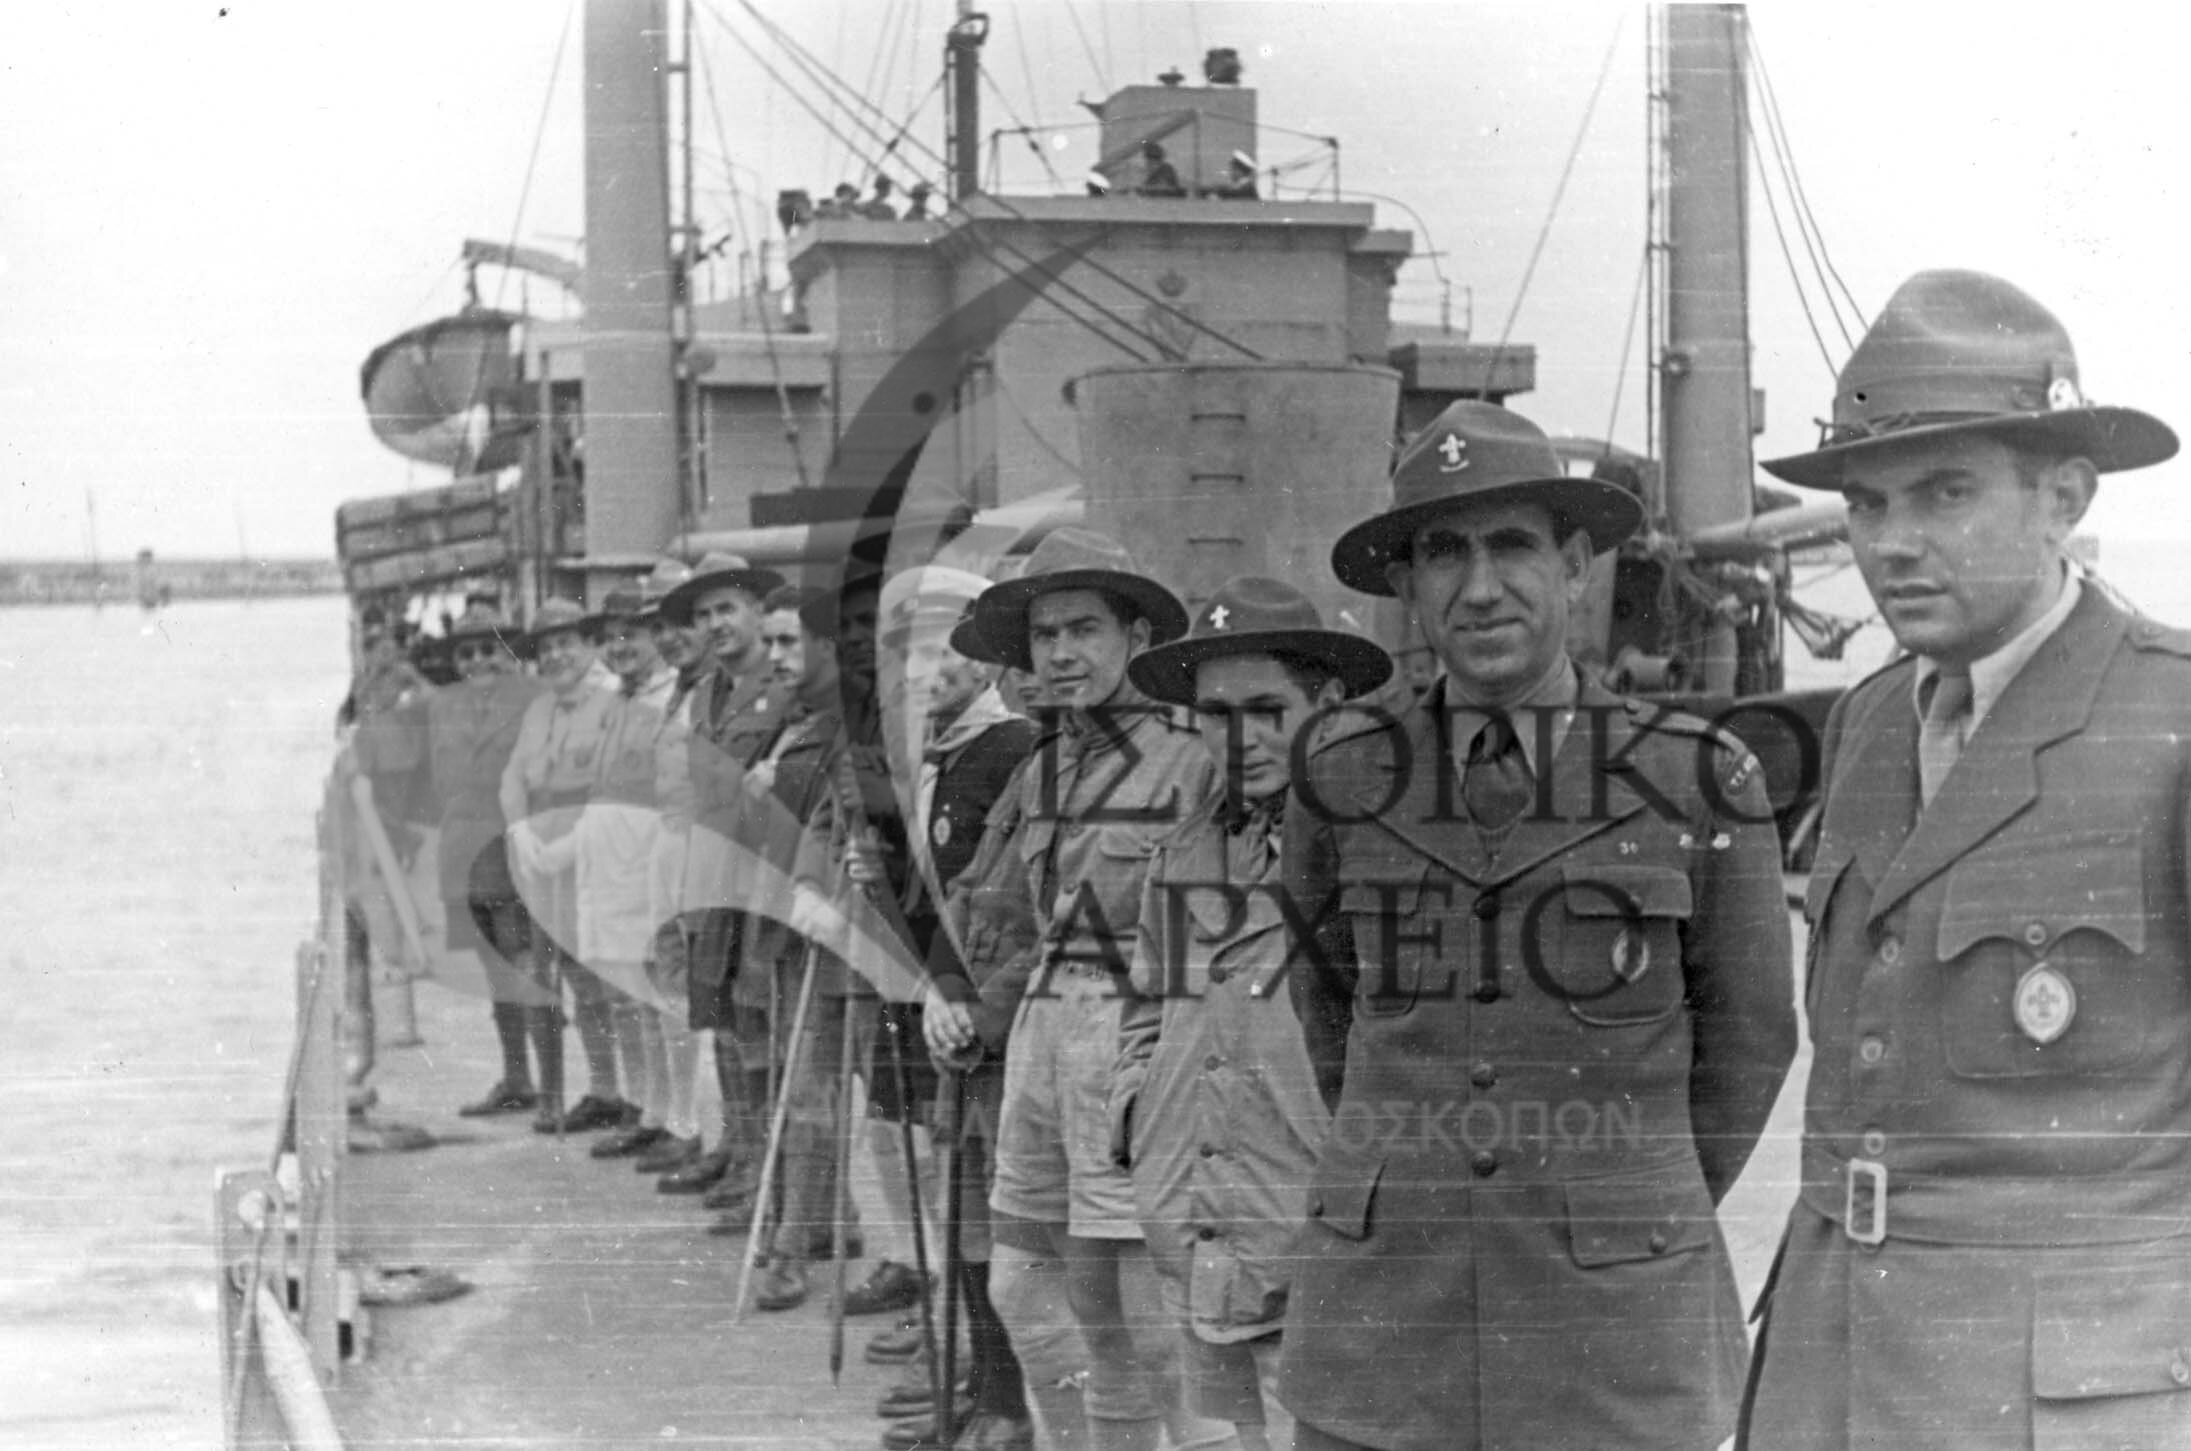 Πρόσκοποι που συμμετέχουν στο Πανελλήνιο Συνέδριο στη Ρόδο, πάνω στο πλοίο την ώρα της αναχώρησης από το λιμάνι του Πειραιά.